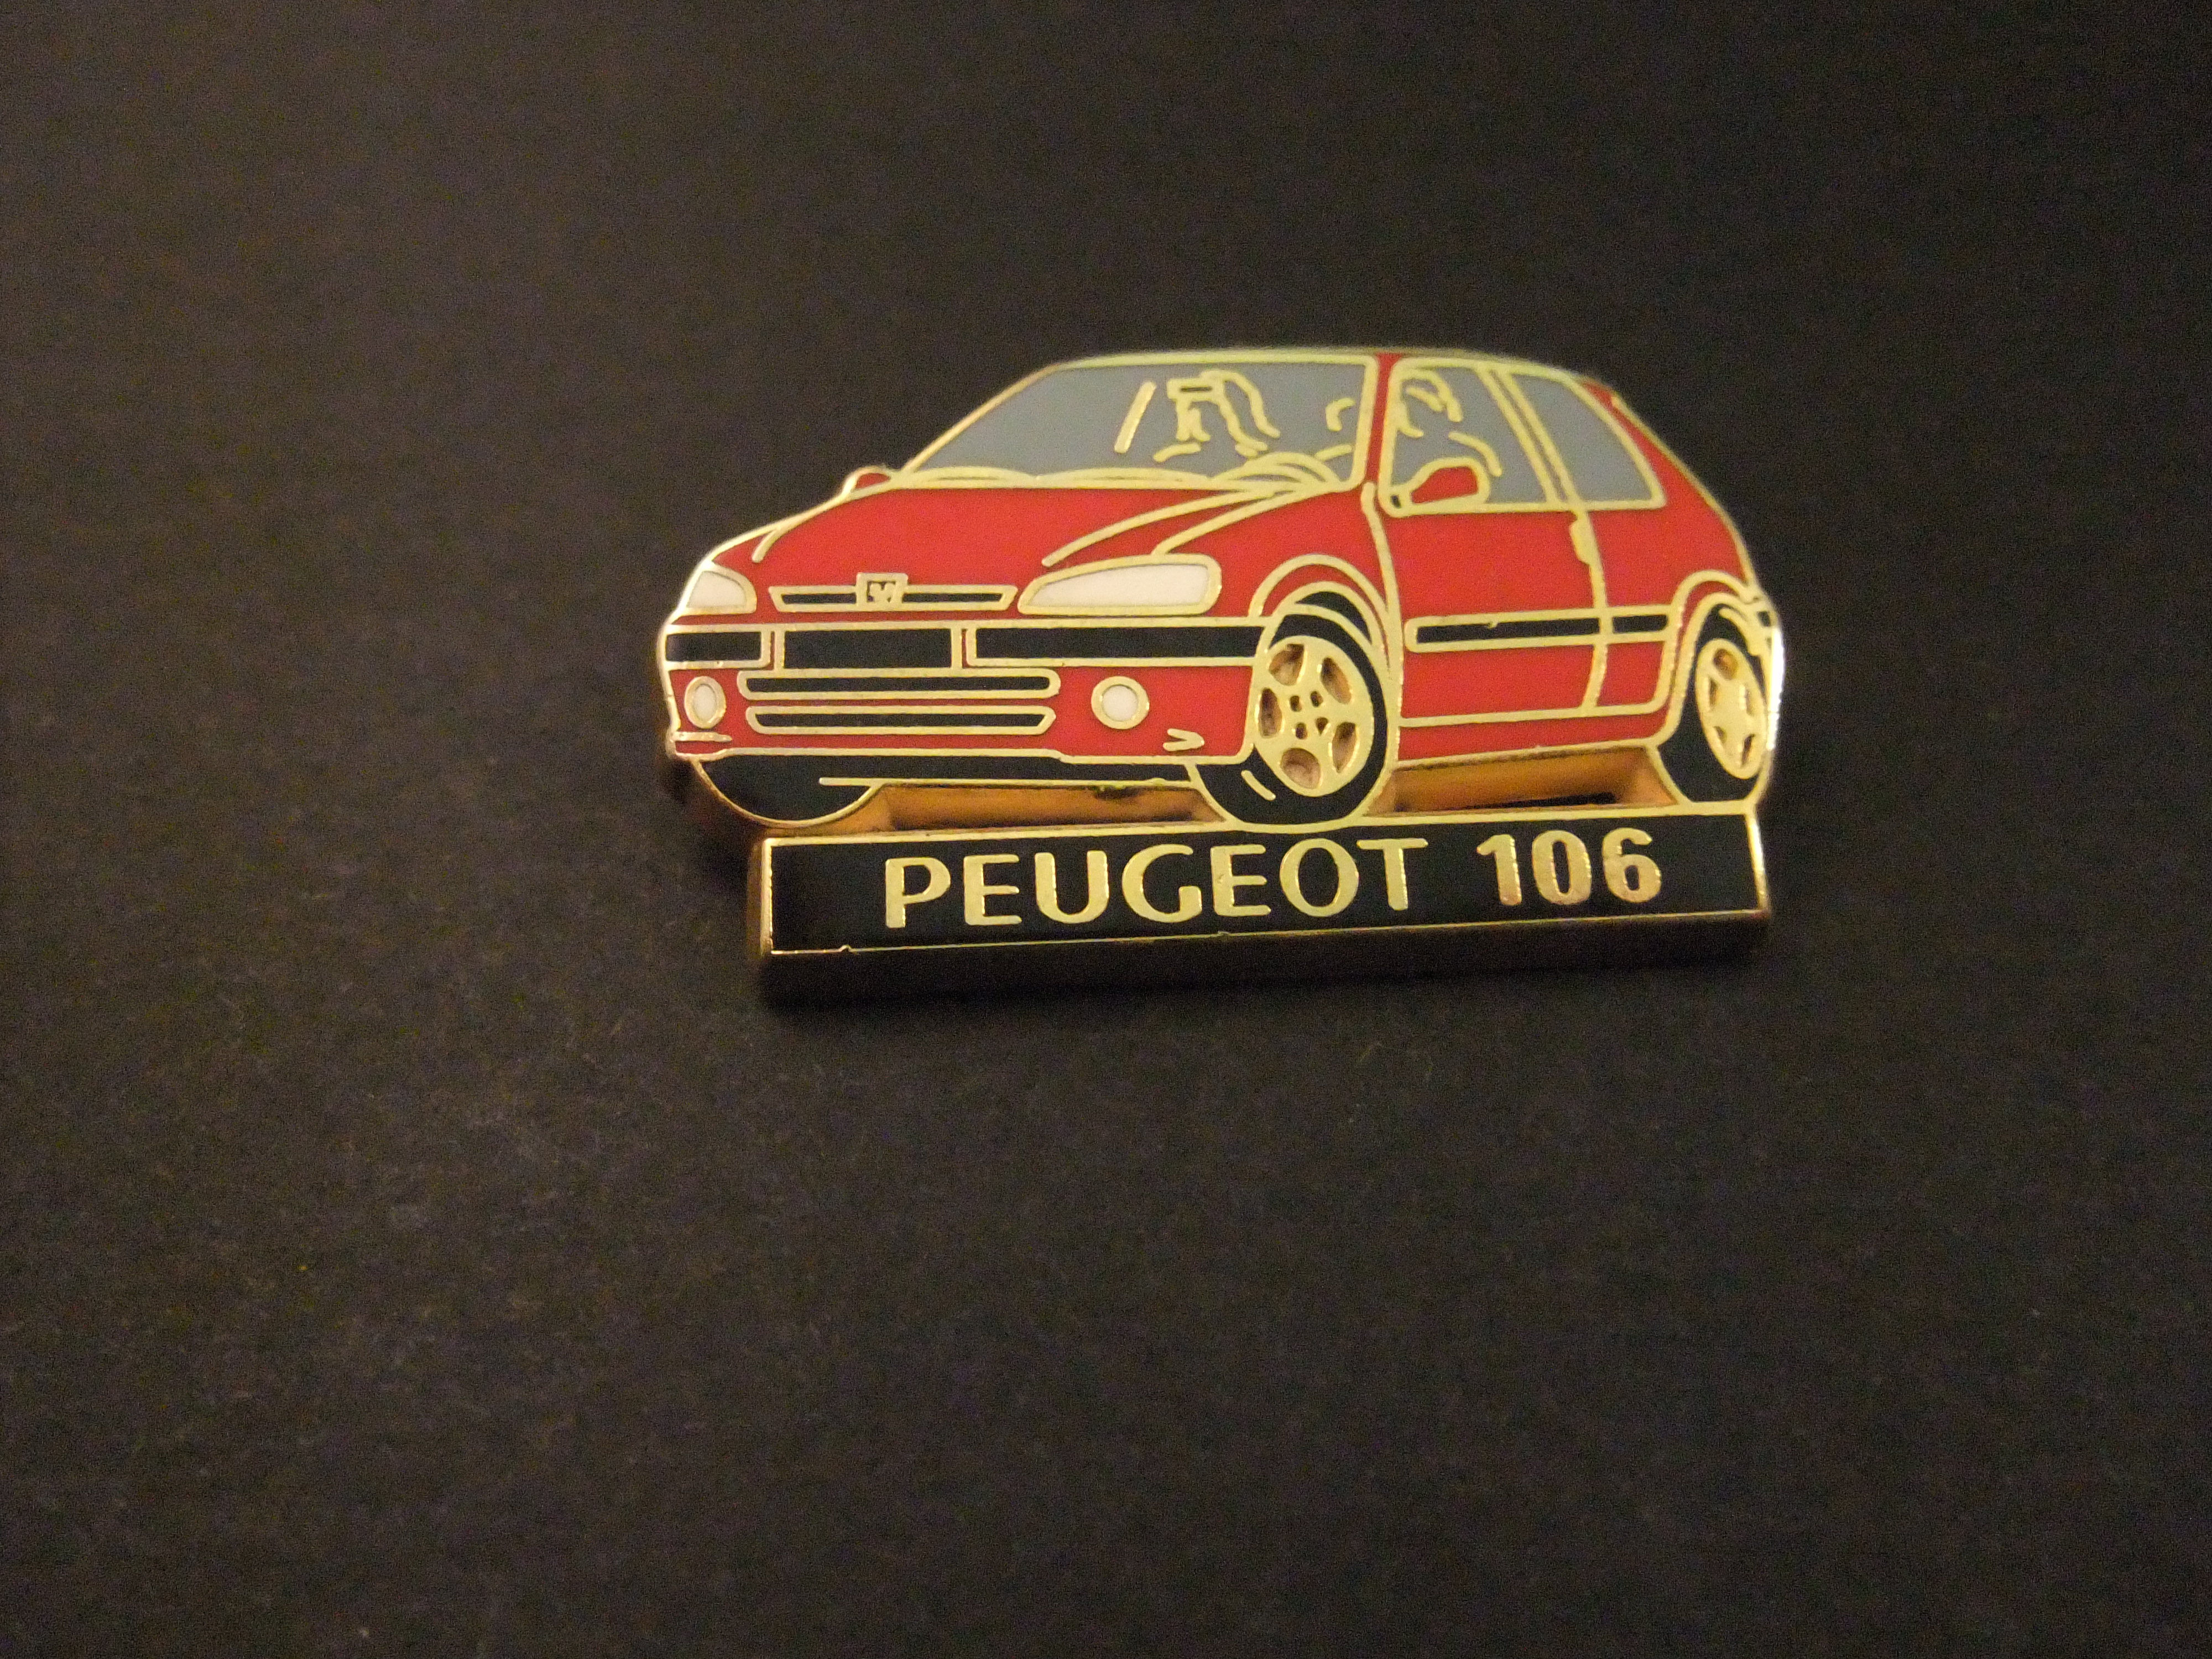 Peugeot 106 rood model